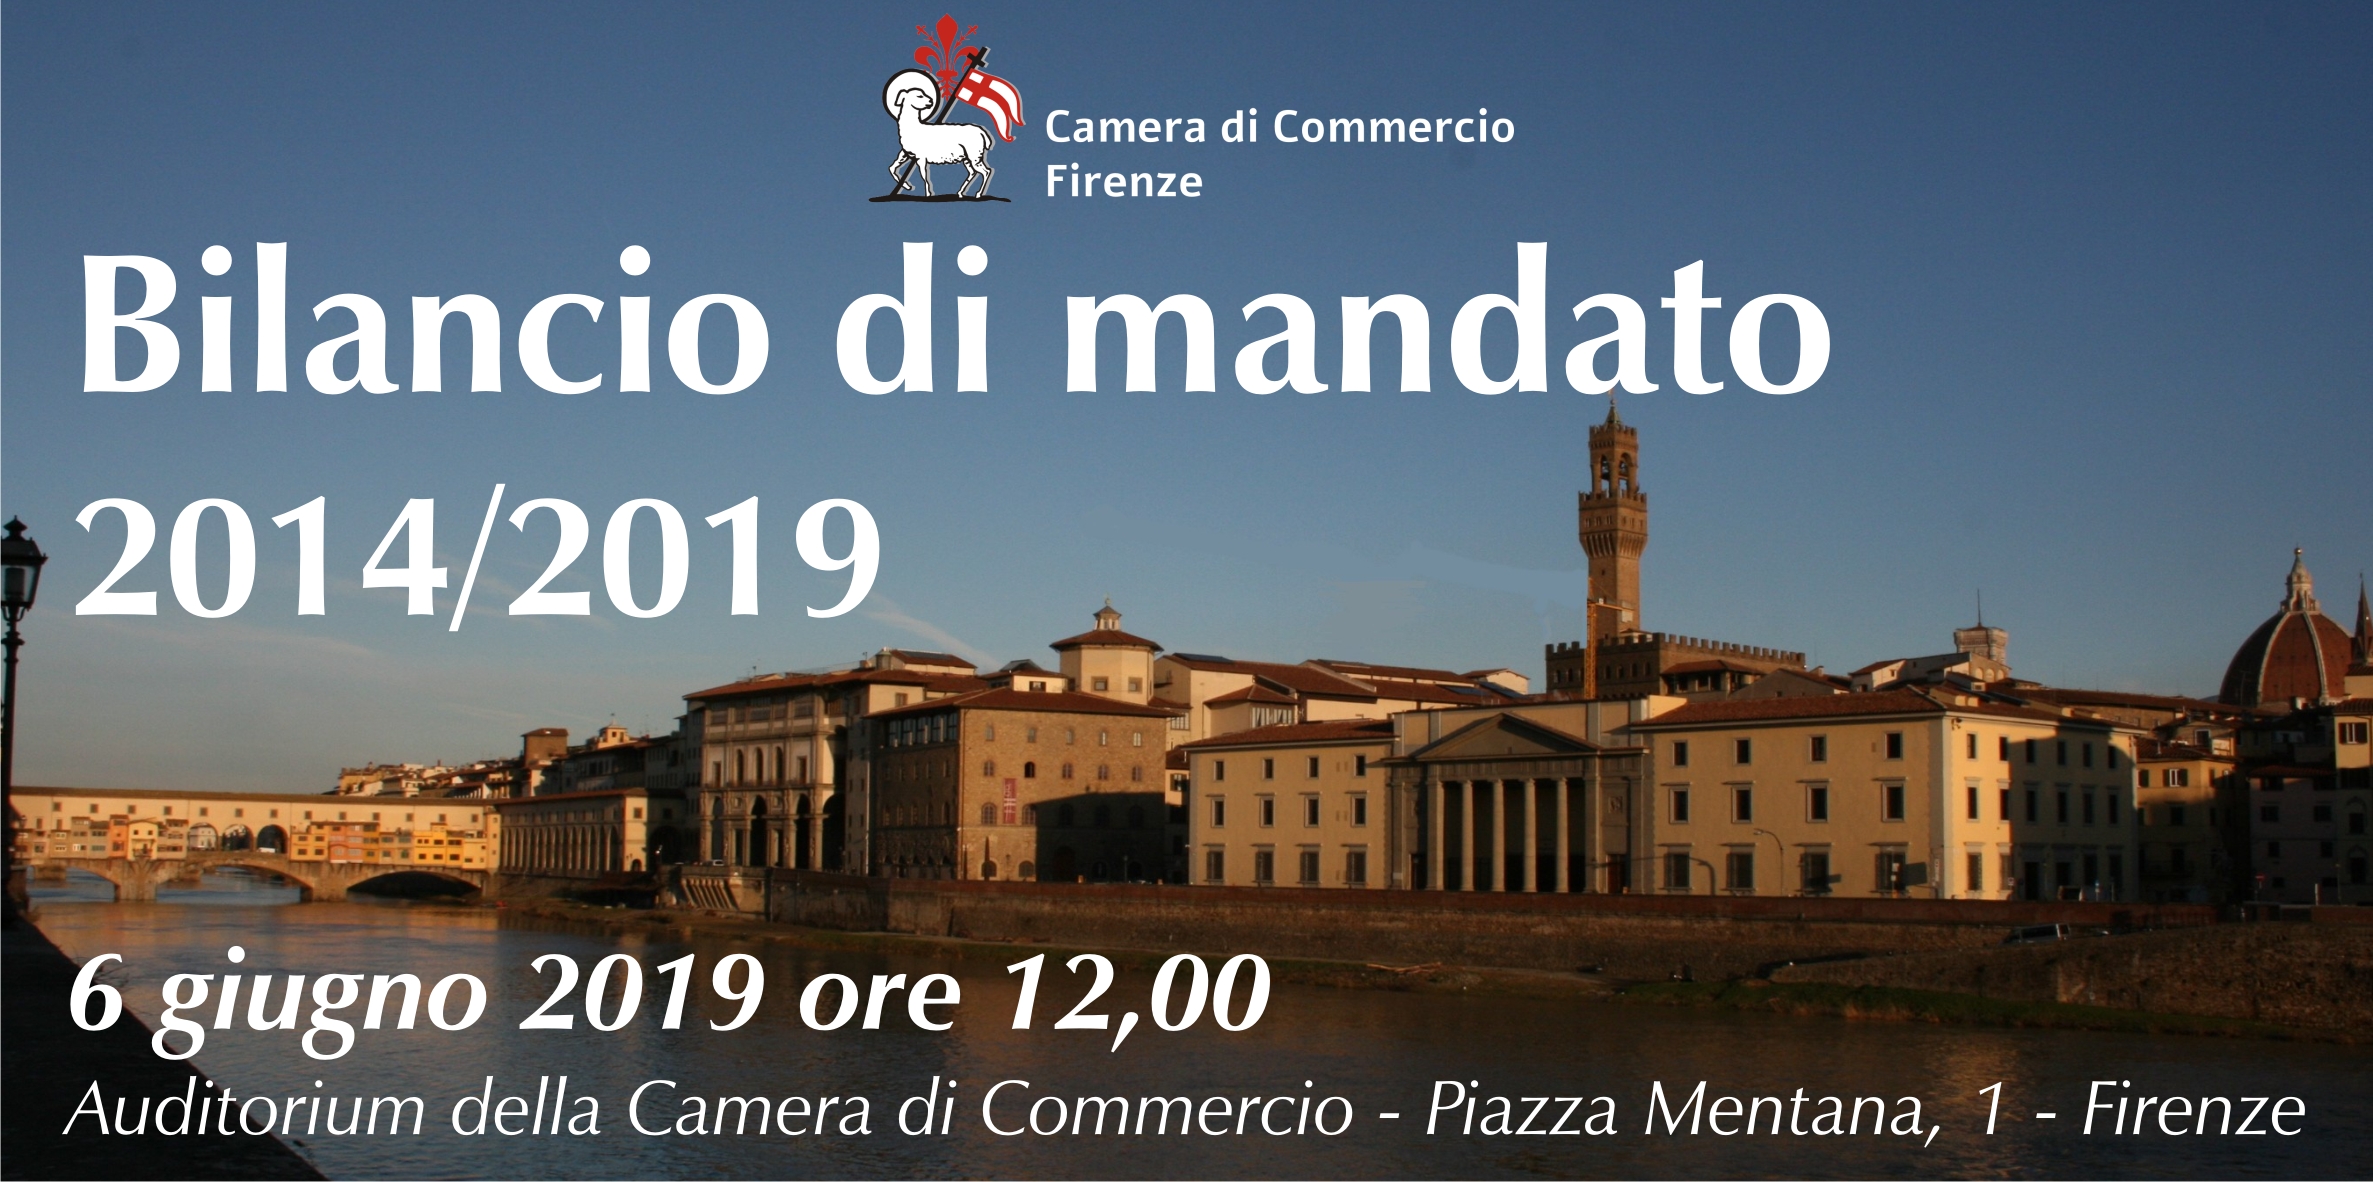 Invito al Bilancio di mandato 2014-2019 il 6 giugno 2019 nell'Auditorium della Camera di Commercio (Piazza Mentana 1)